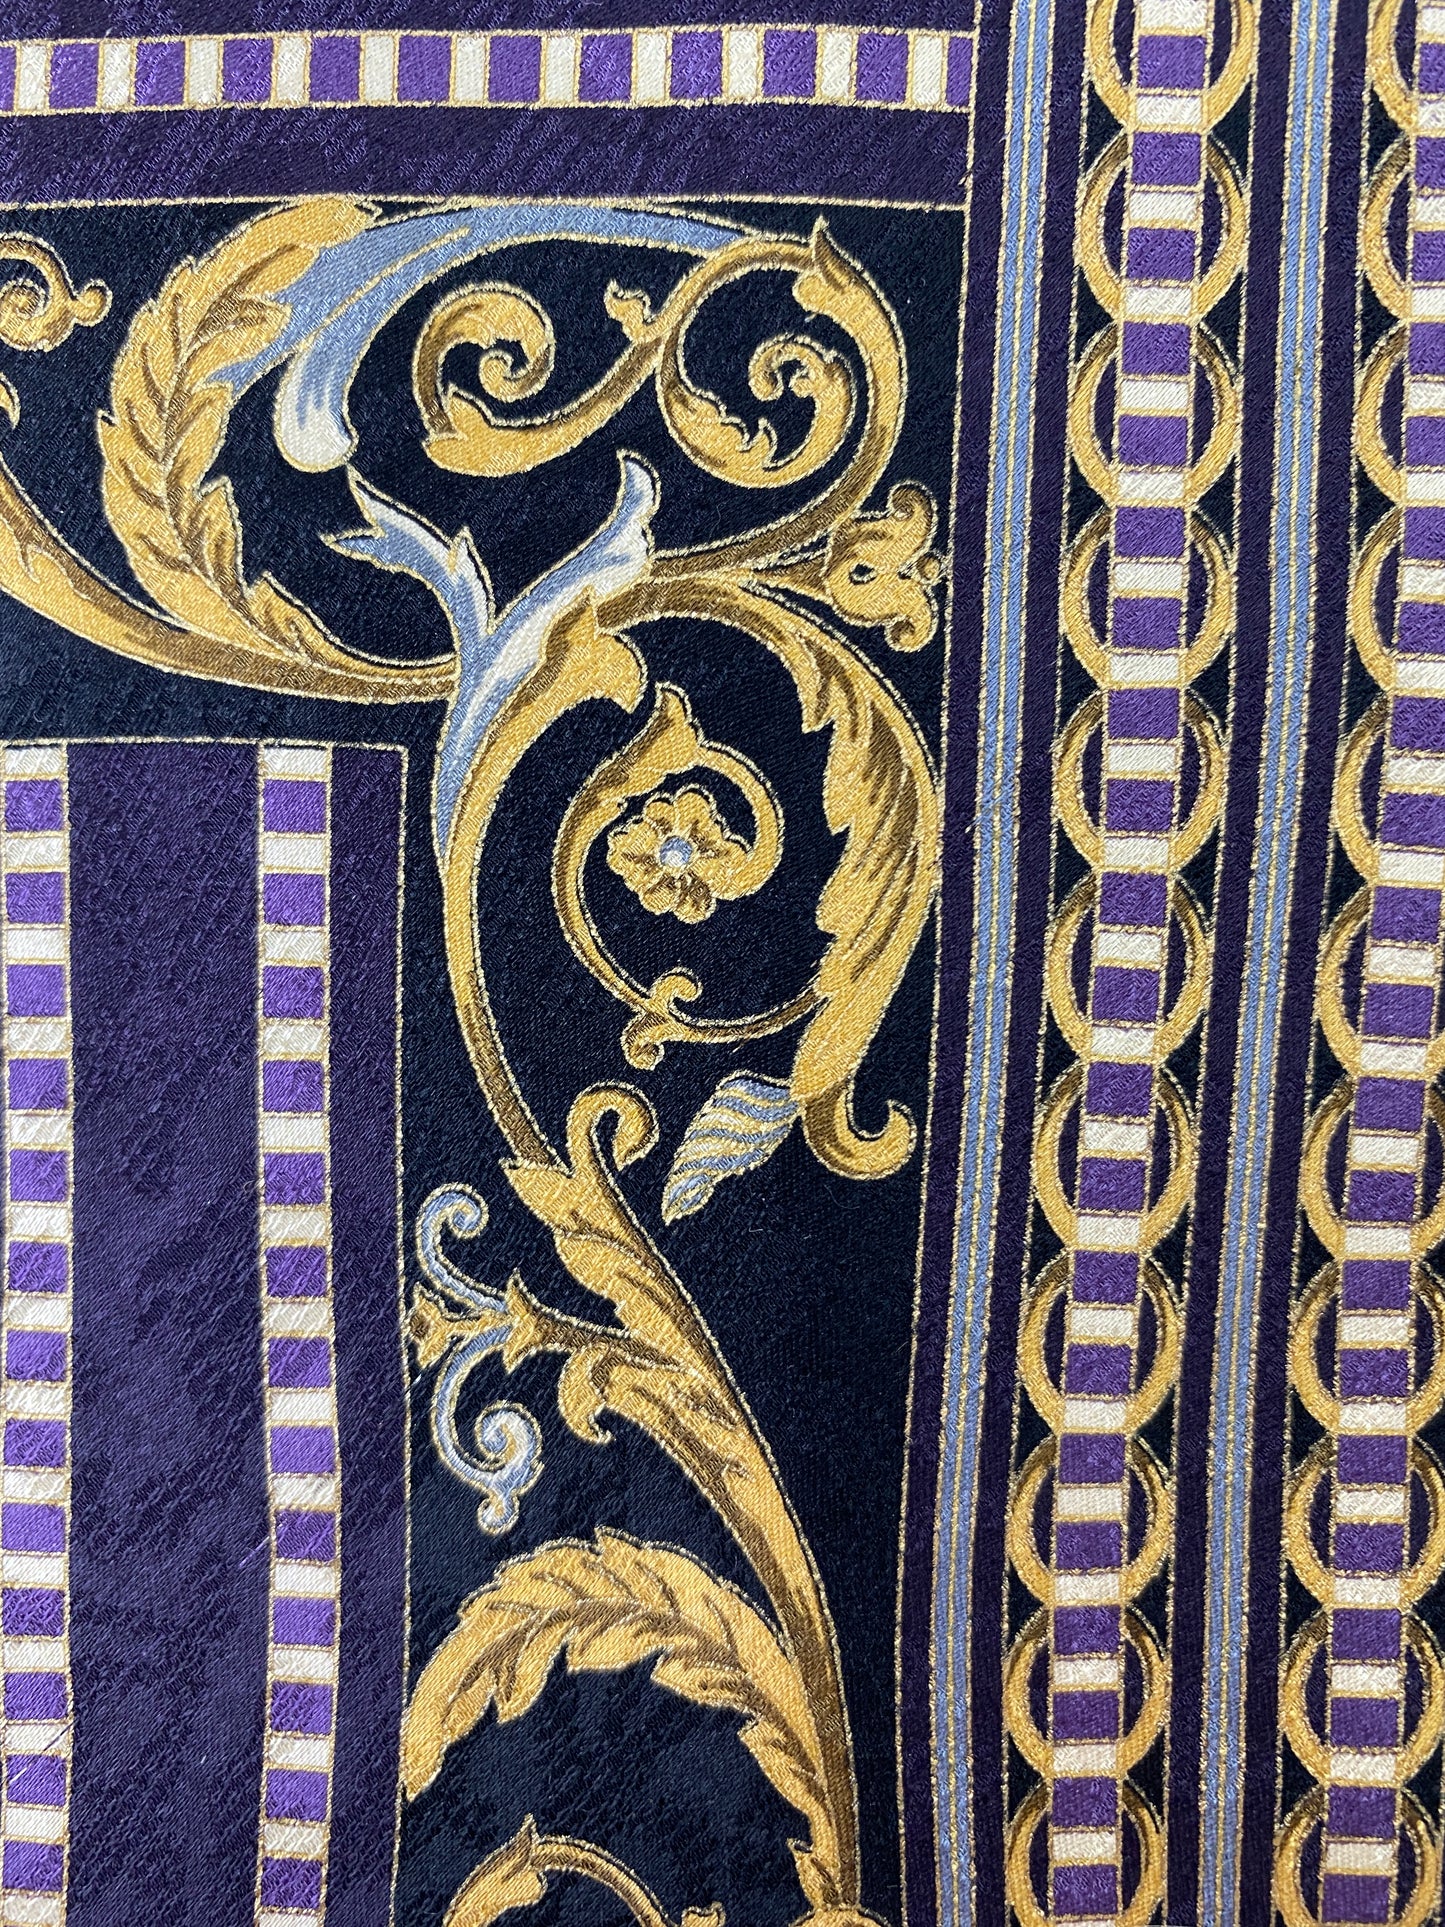 Close-up of: 90s Deadstock Silk Necktie, Men's Vintage Black/ Purple/ Gold Art Nouveau Print Tie, NOS